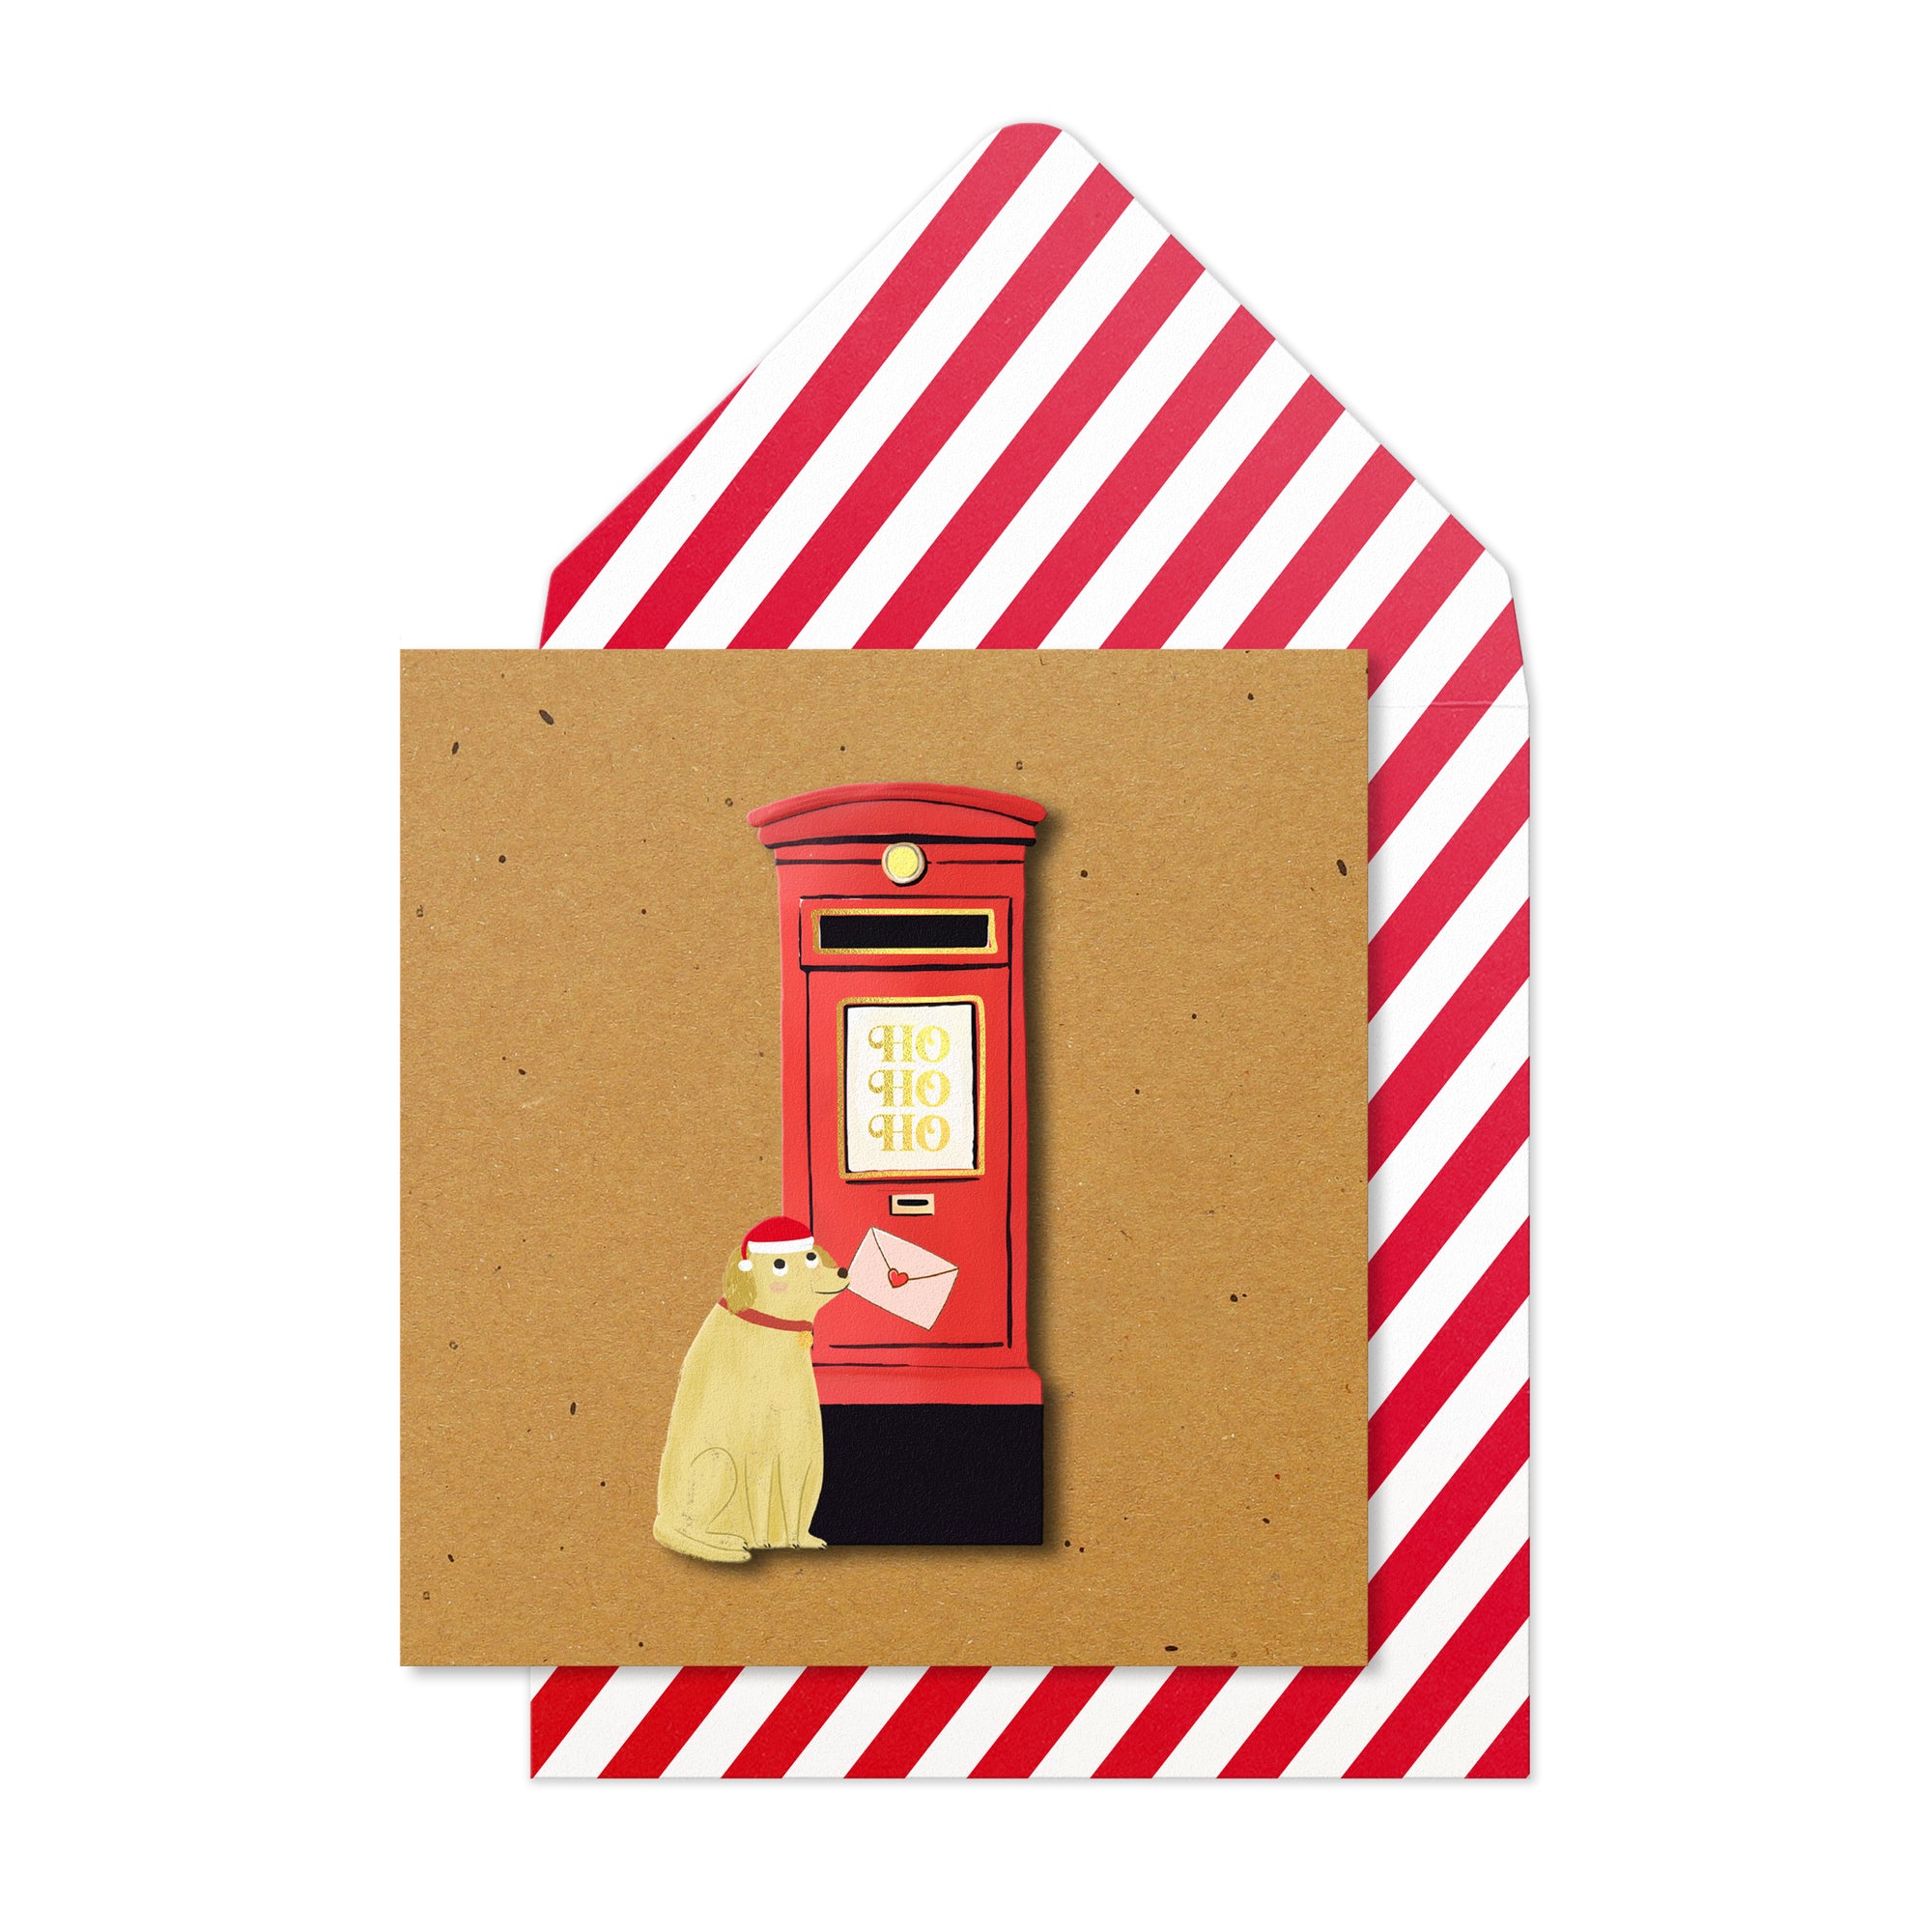 Ho ho ho London Postbox